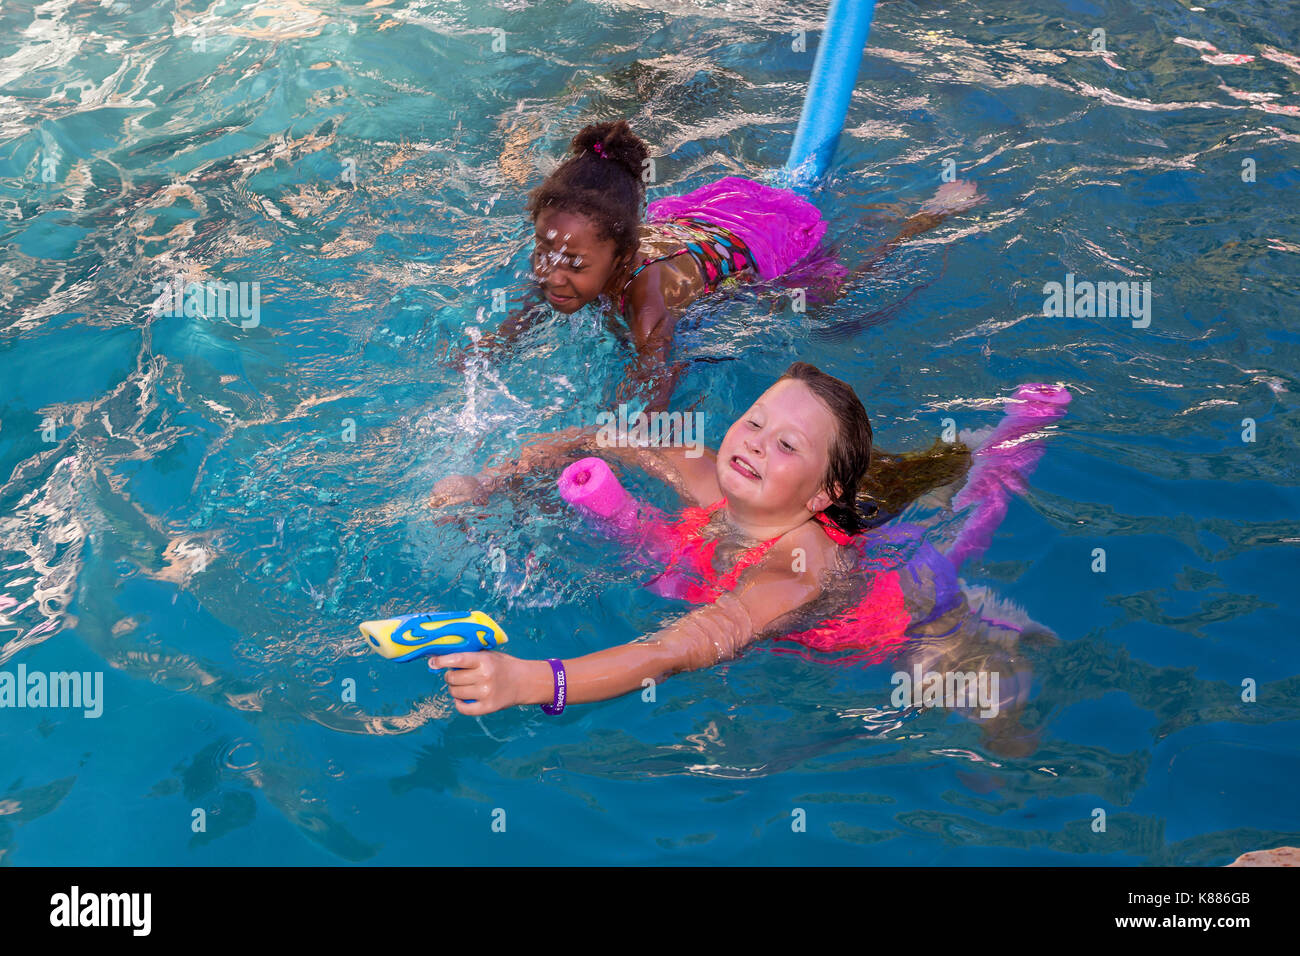 Le bambine e i bambini, giocando, schizzare acqua soaker, piscina, piscina di acqua dolce, party in piscina, Castro Valley, contea di Alameda, California, unità Foto Stock